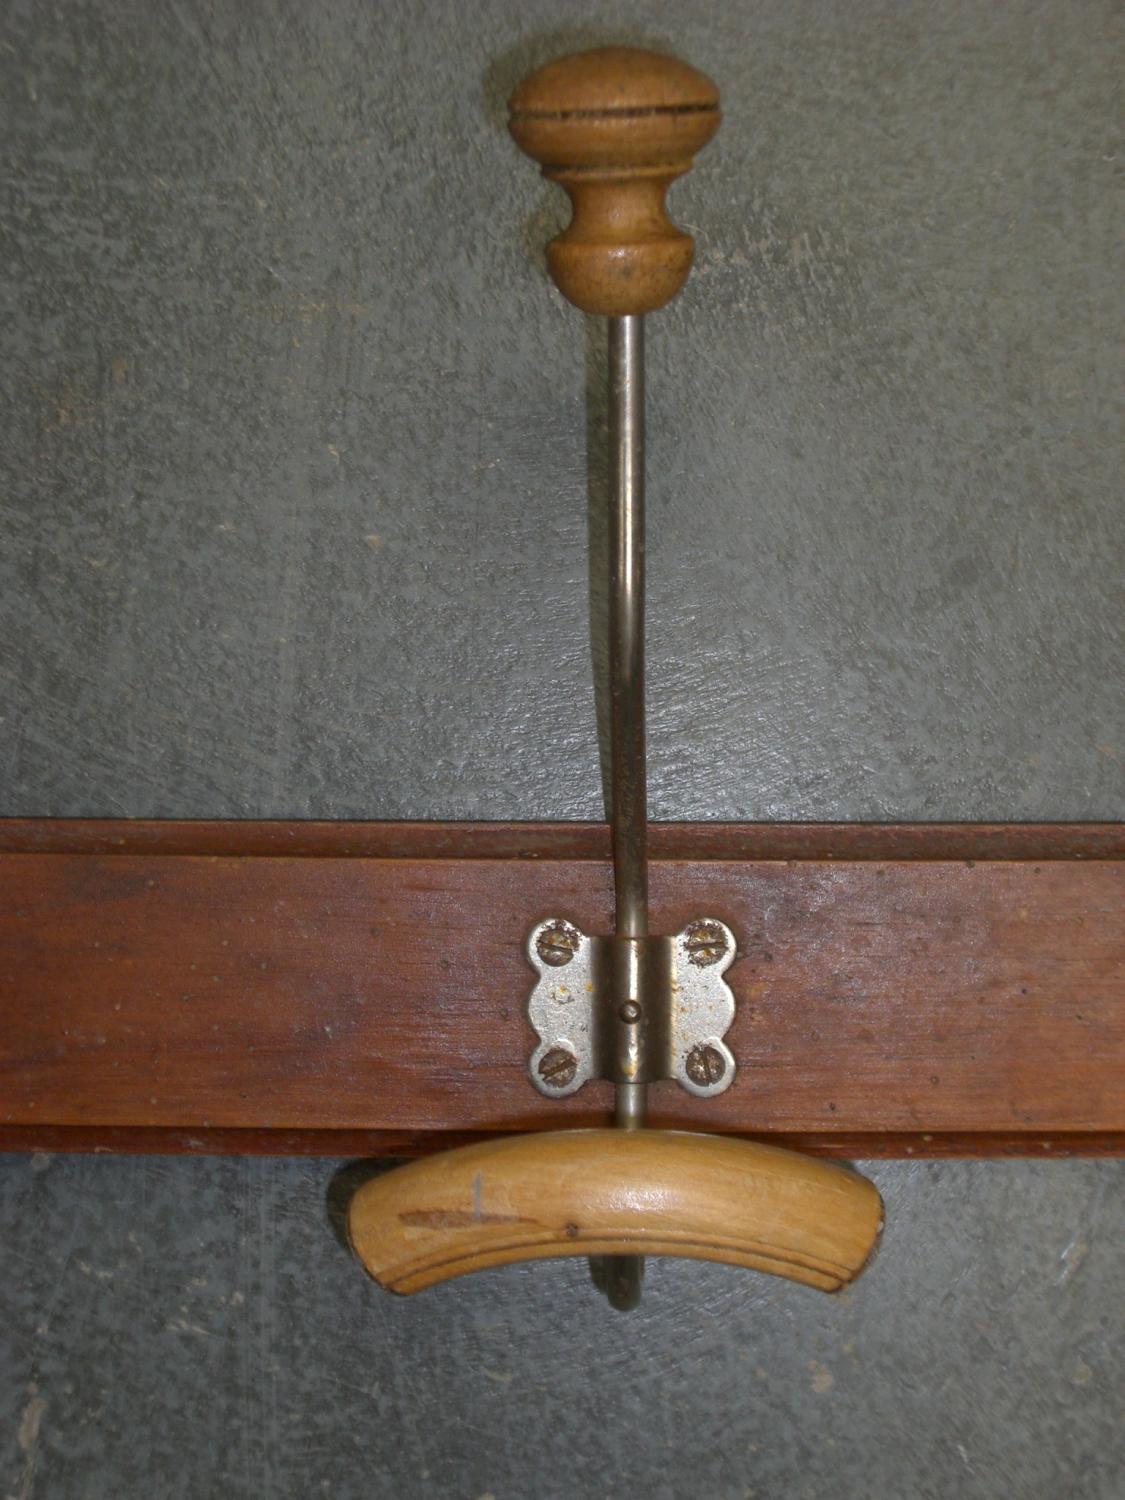 Antique French Coat Hooks (three hooks)